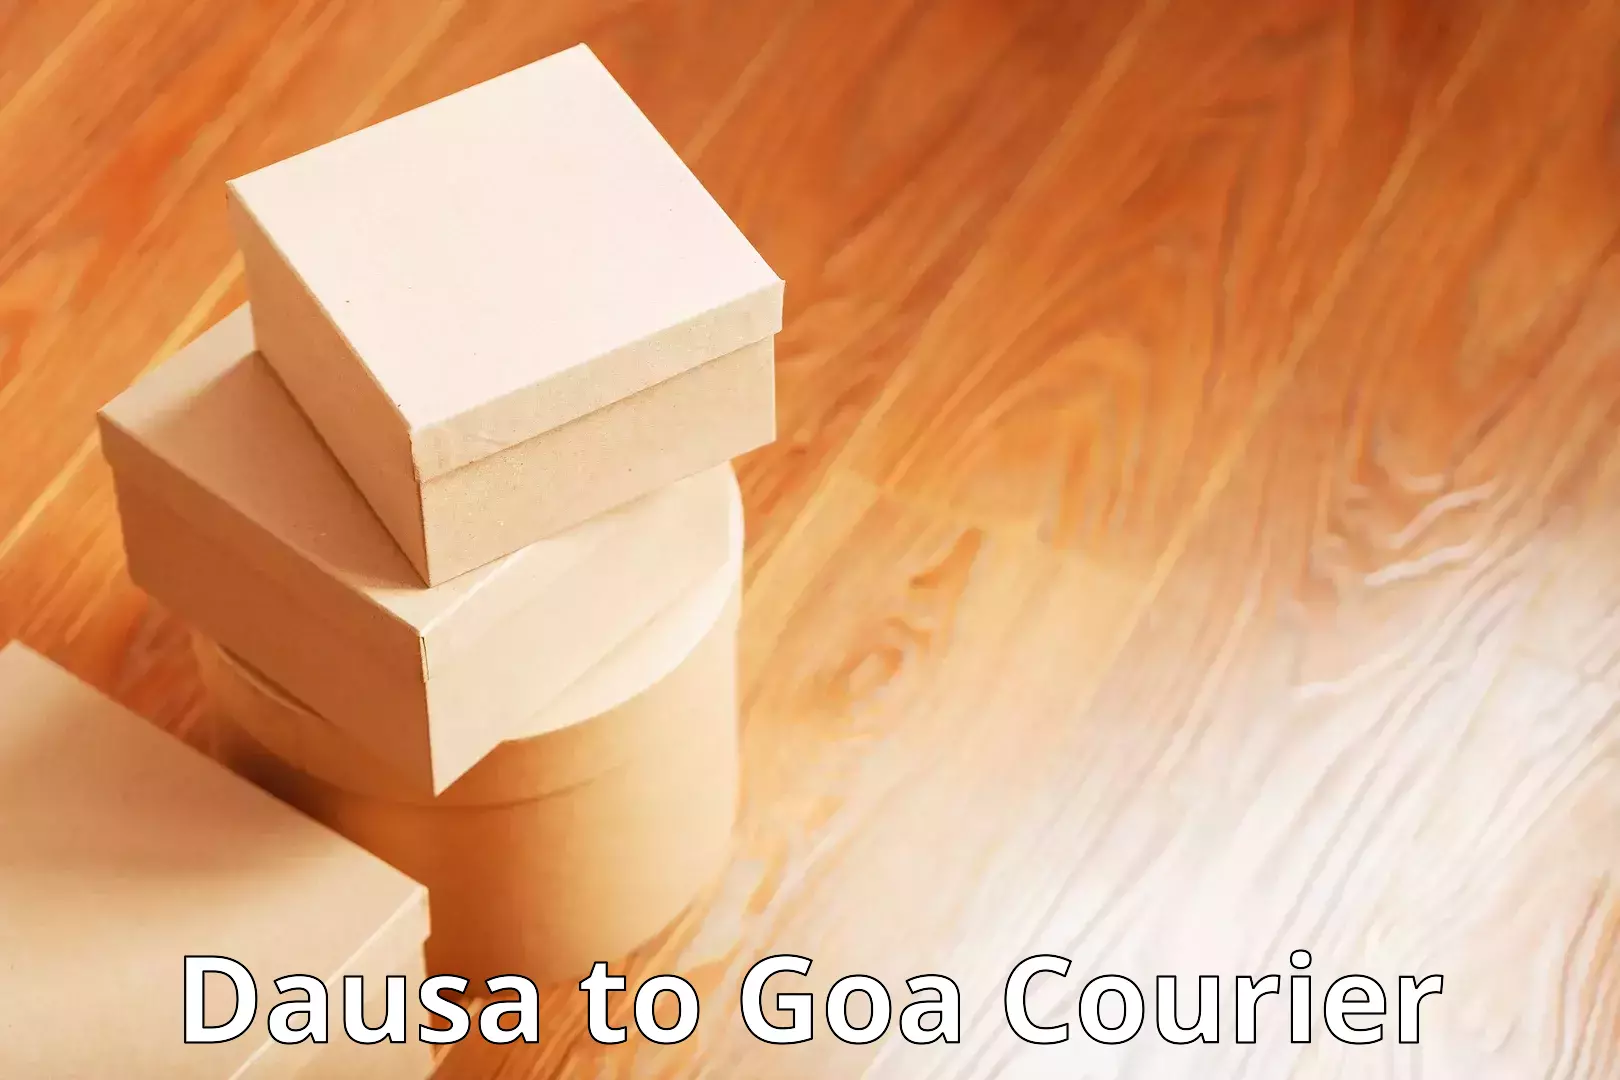 Urgent courier needs Dausa to Goa